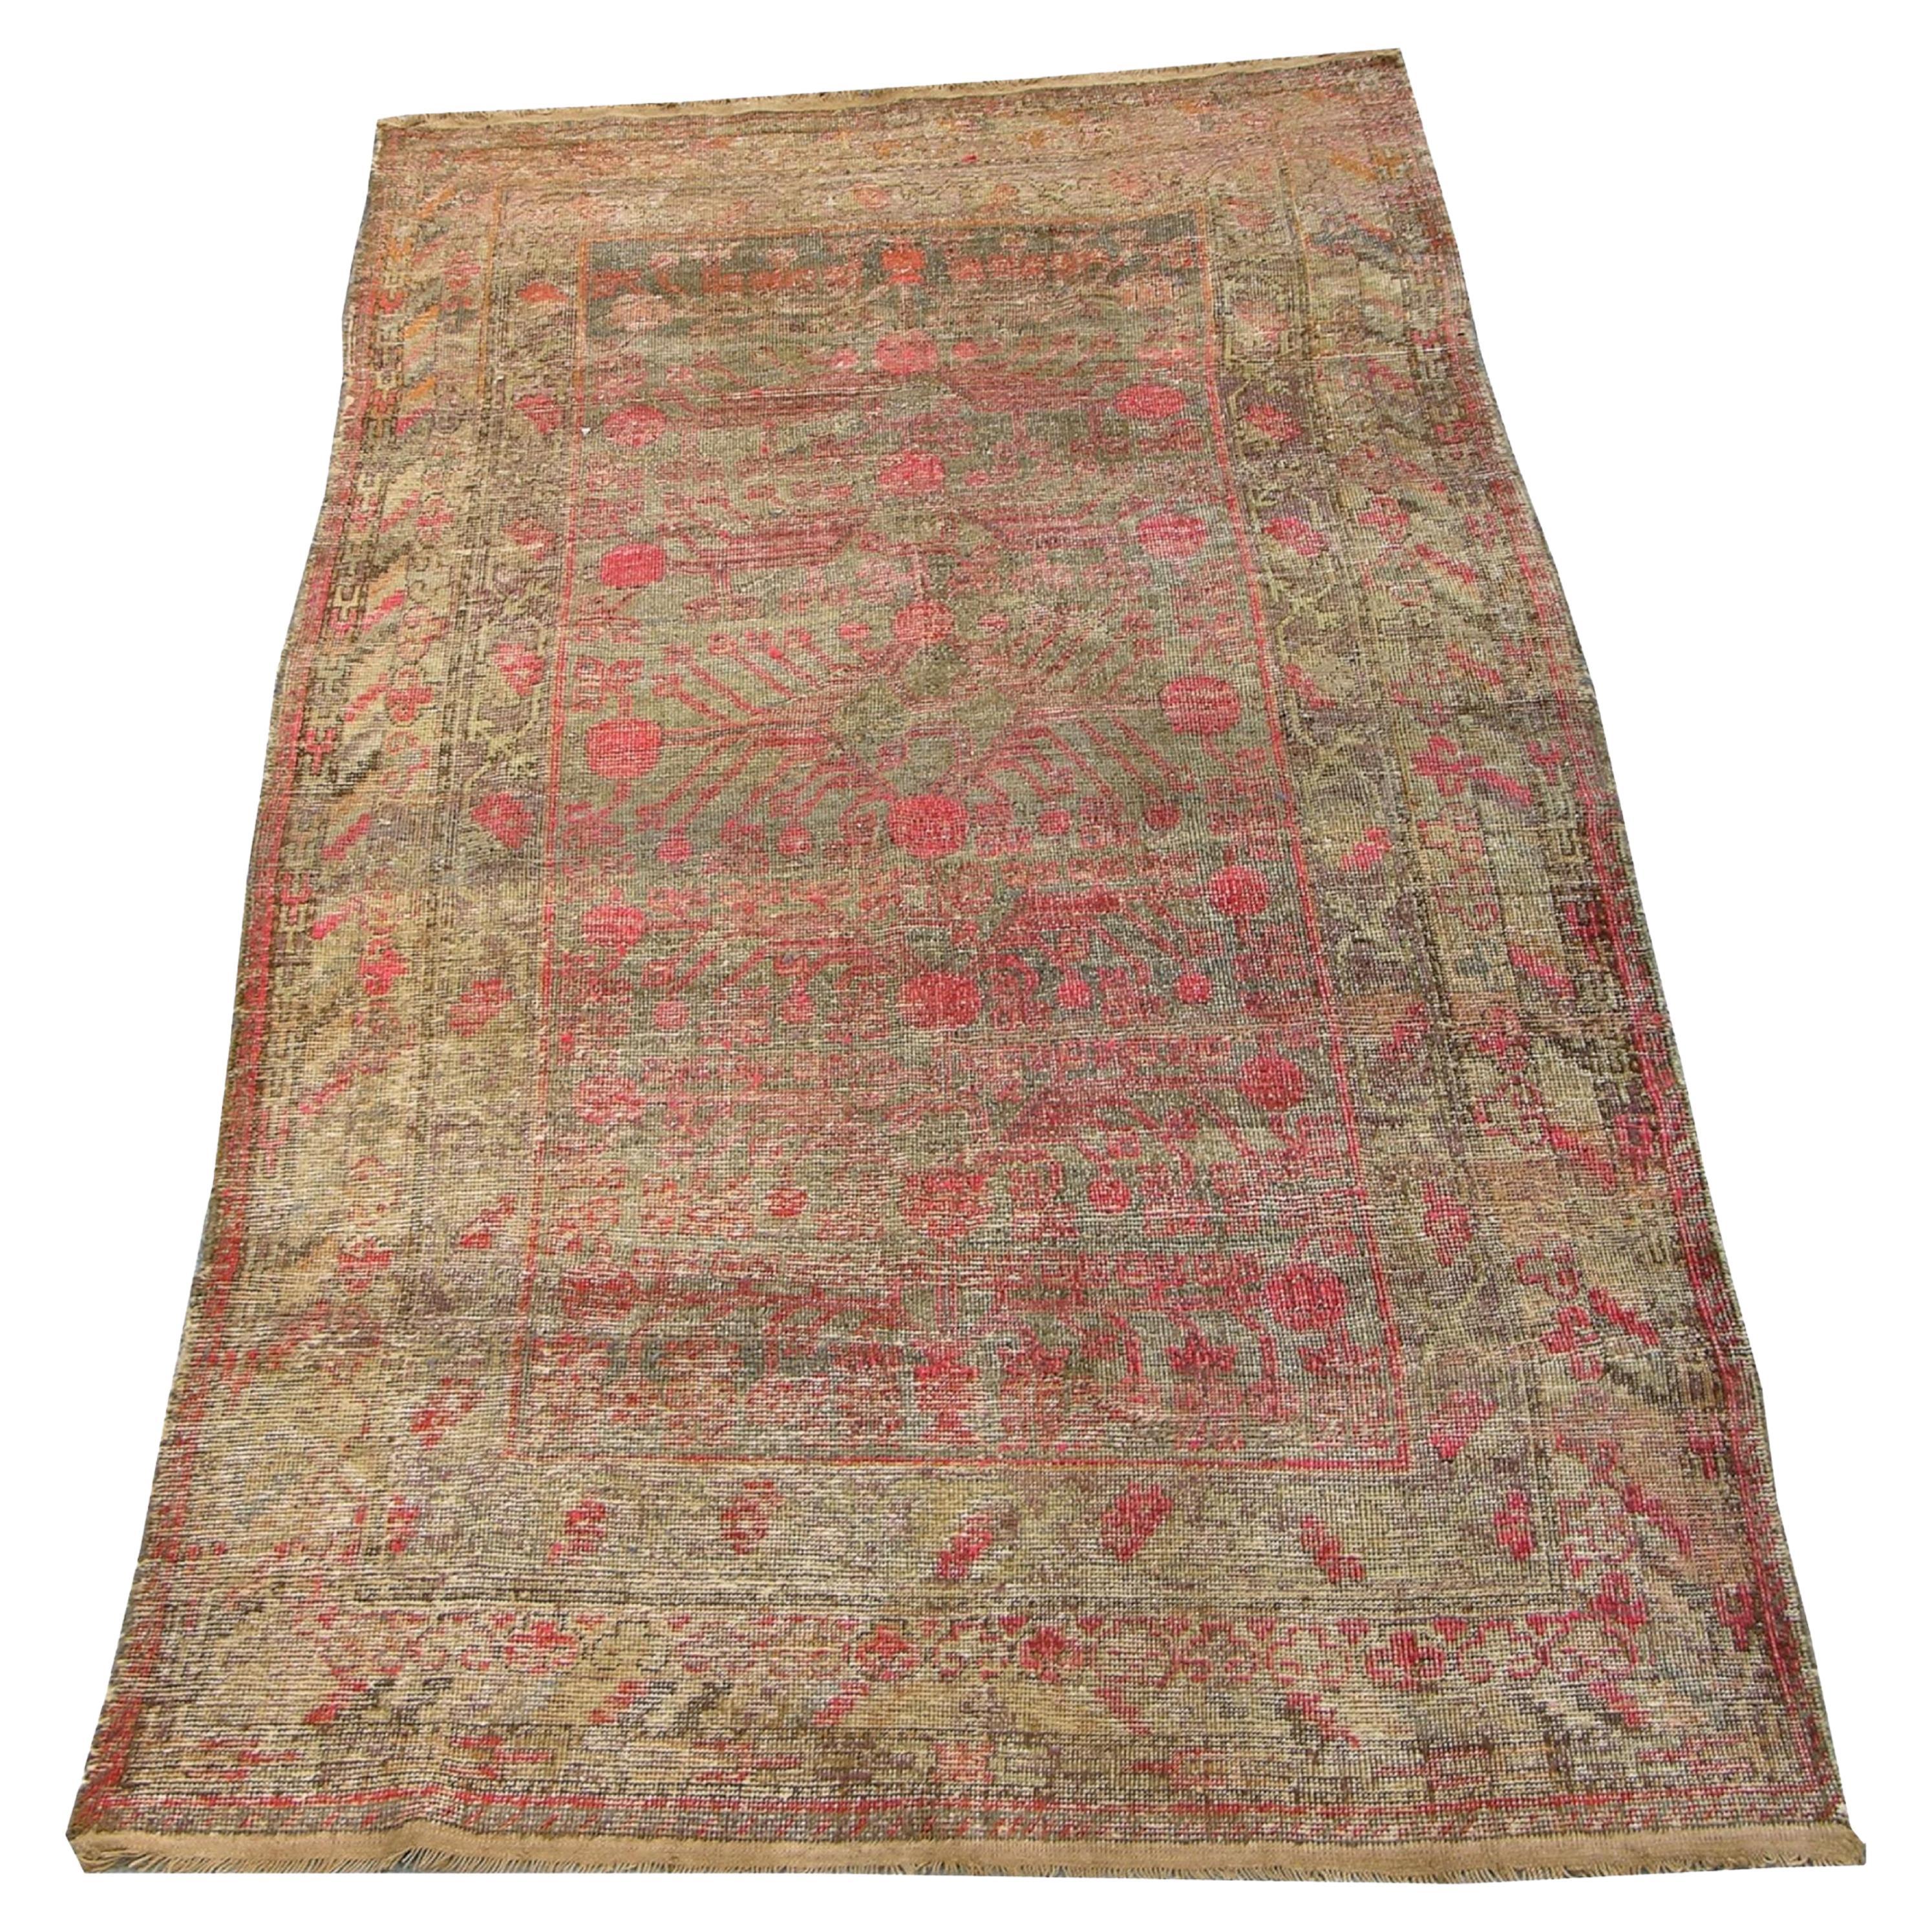 Late-19th Century Khotan Samarkand Rug For Sale